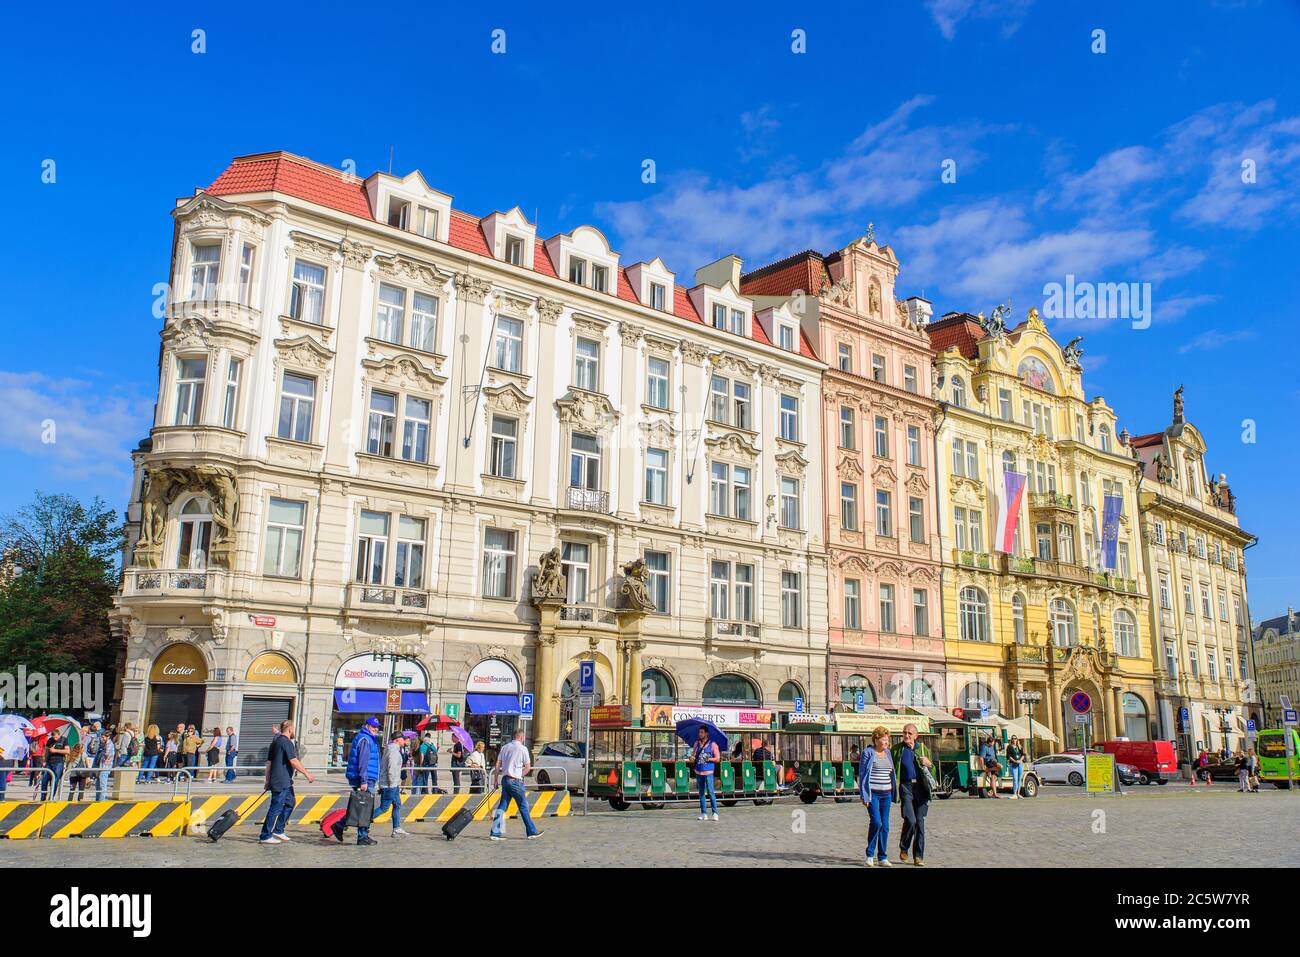 Les gens sur la place de la Vieille ville à Prague, République tchèque Banque D'Images